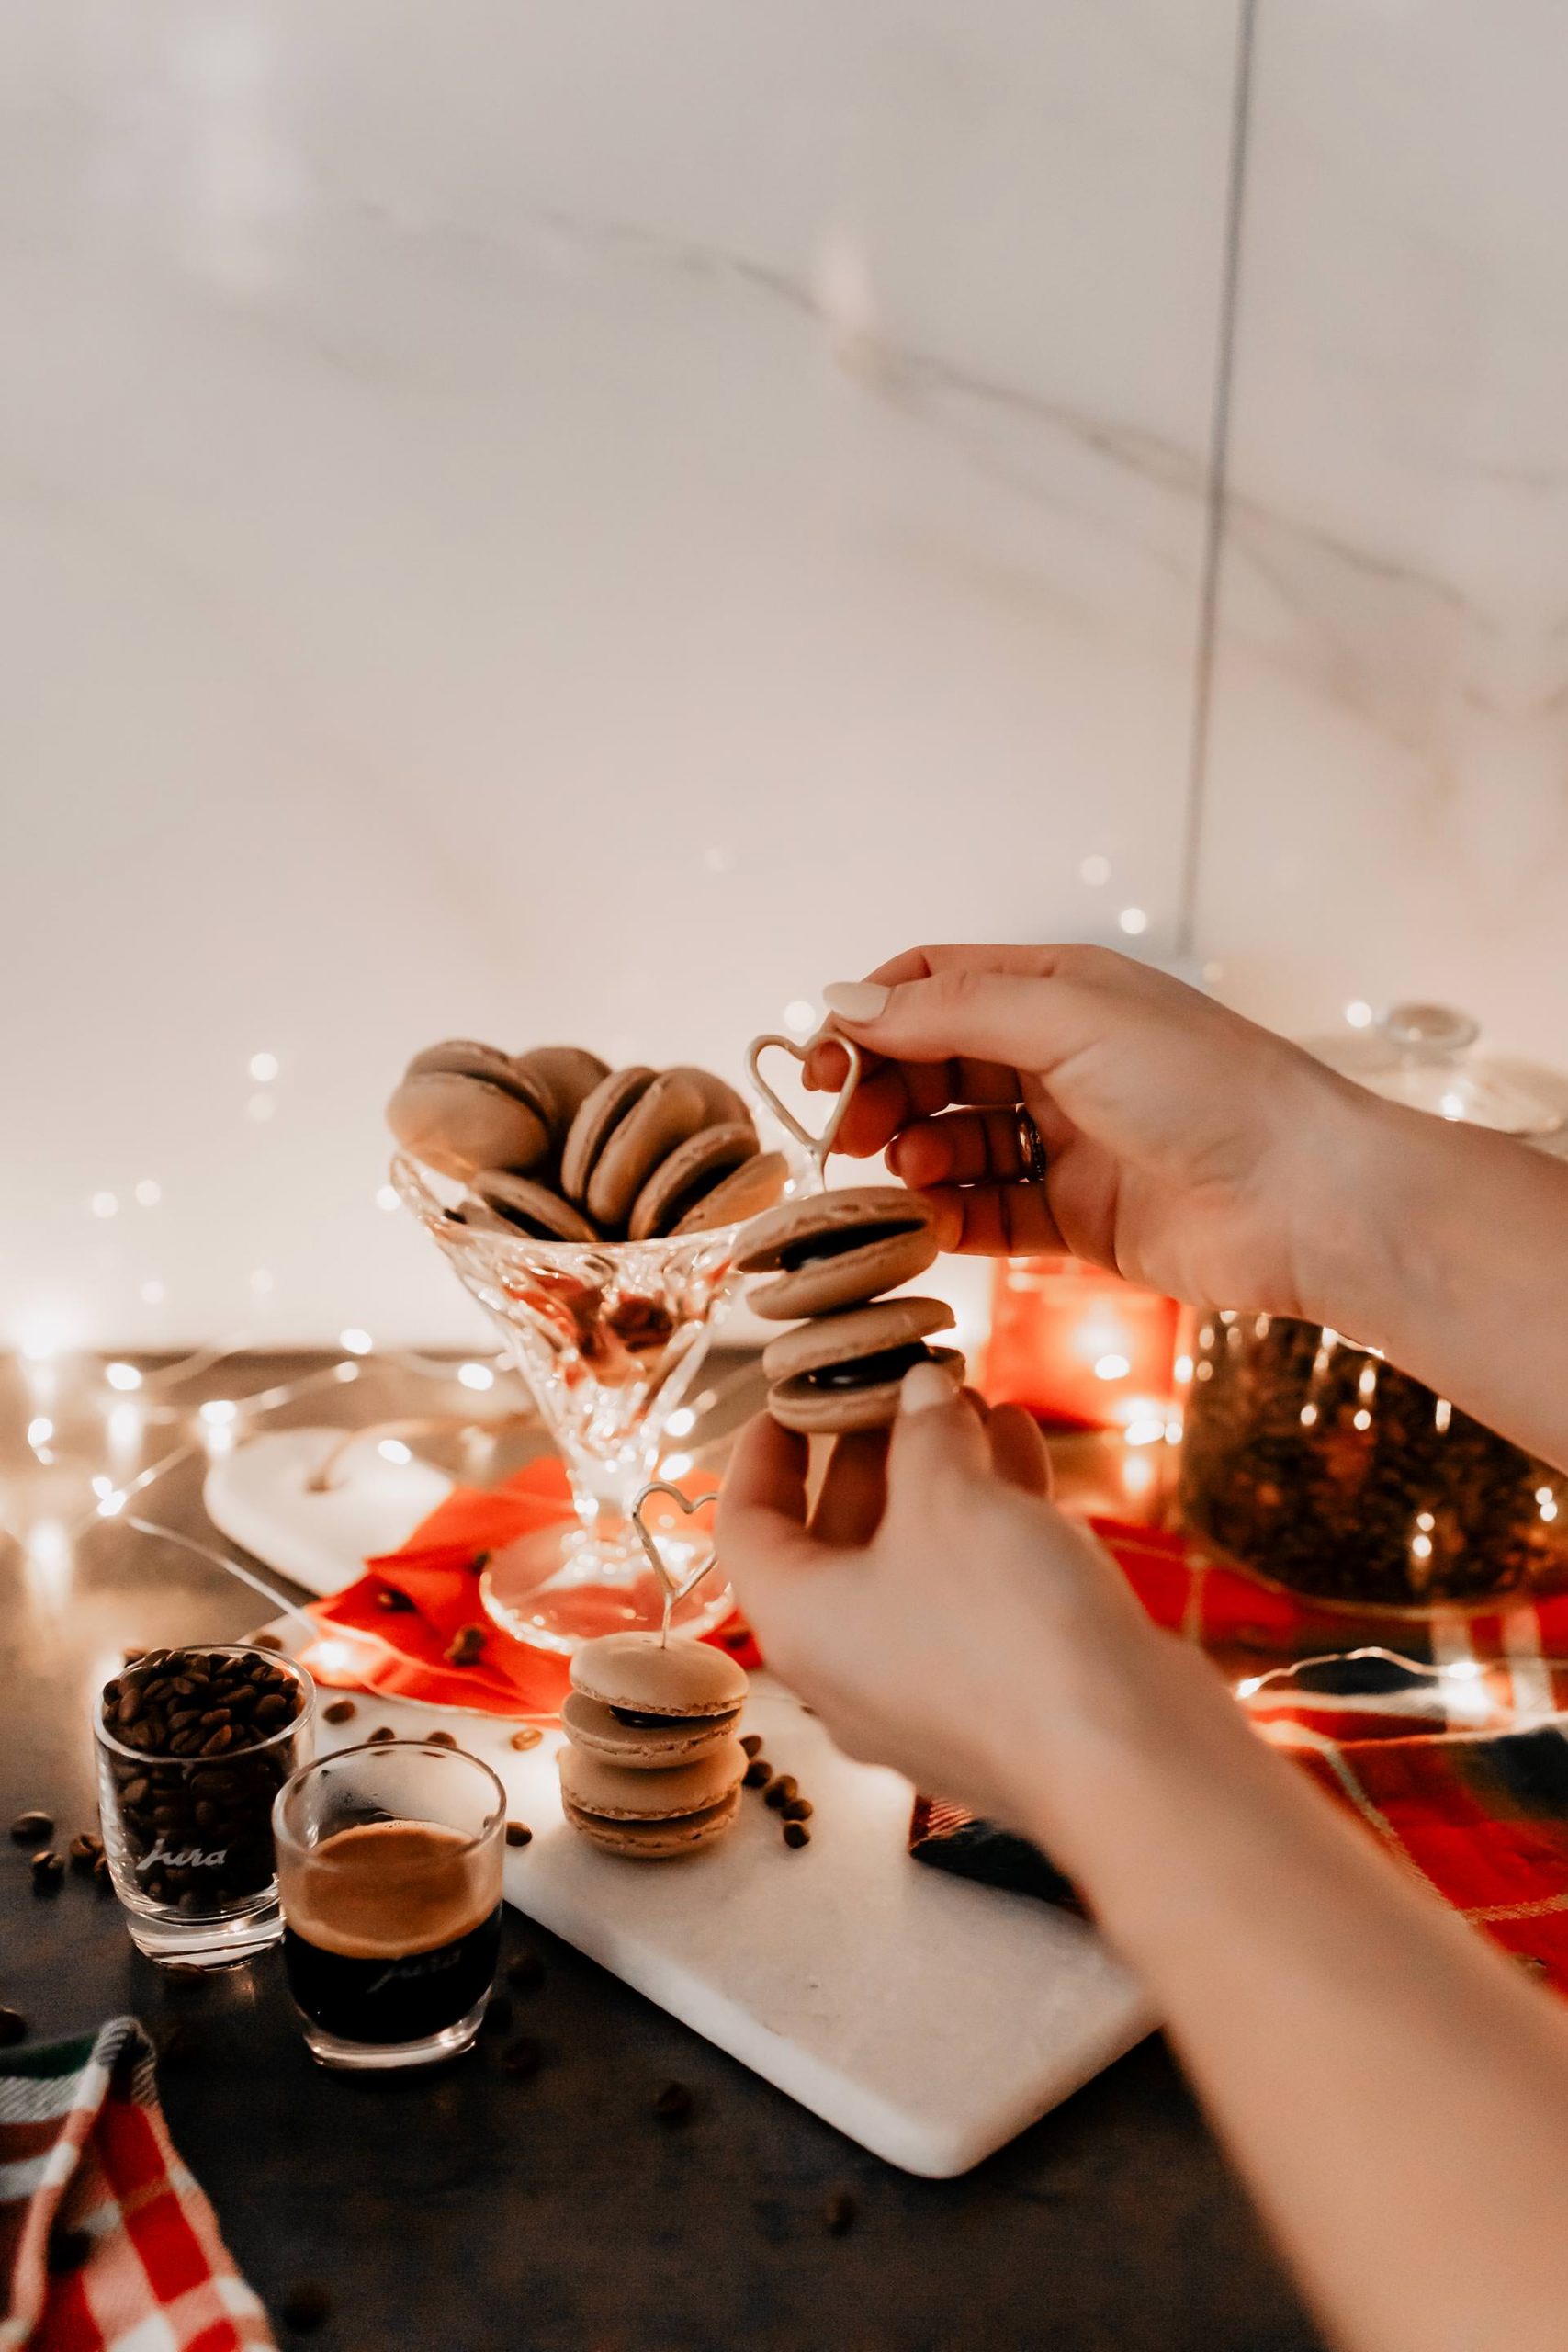 Anzeige/Gewinnspiel. Ein Rezept für Coffee-Junkies findest du jetzt am Foodblog! So einfach kannst du Kaffee-Macarons selber machen! Außerdem wartet ein tolles Gewinnspiel auf dich. www.whoismocca.com #macarons #rezept #weihnachten